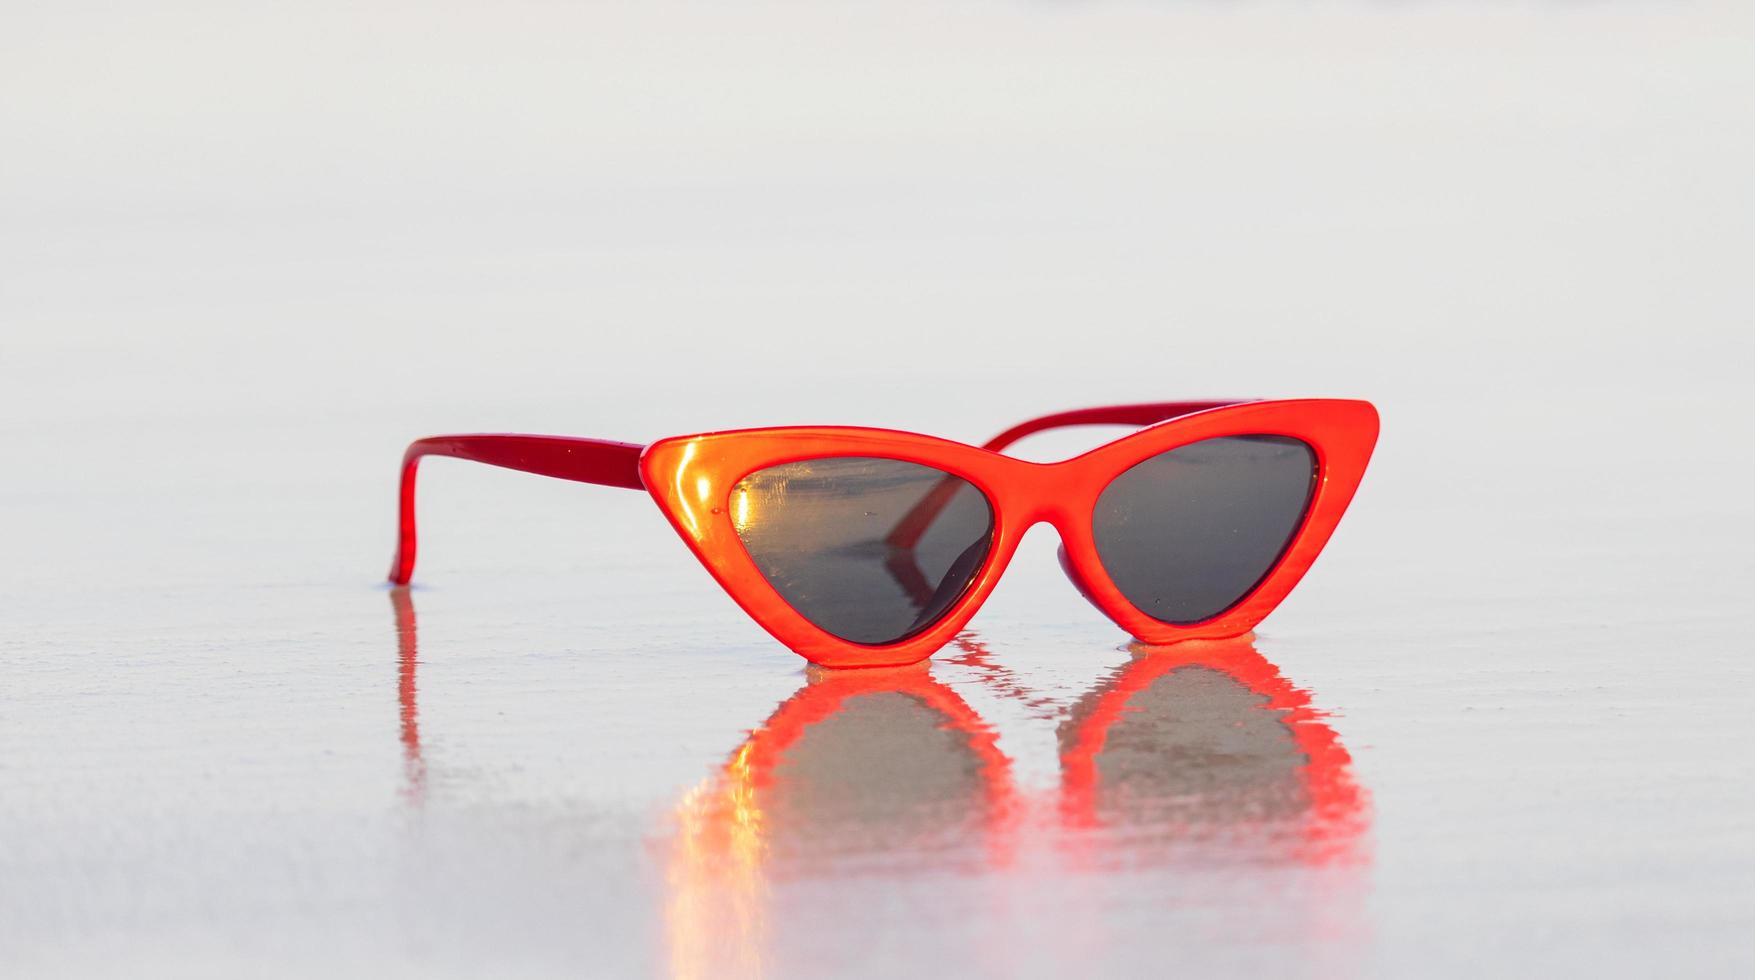 Sonnenbrille auf Sand schöner Sommerstrand foto